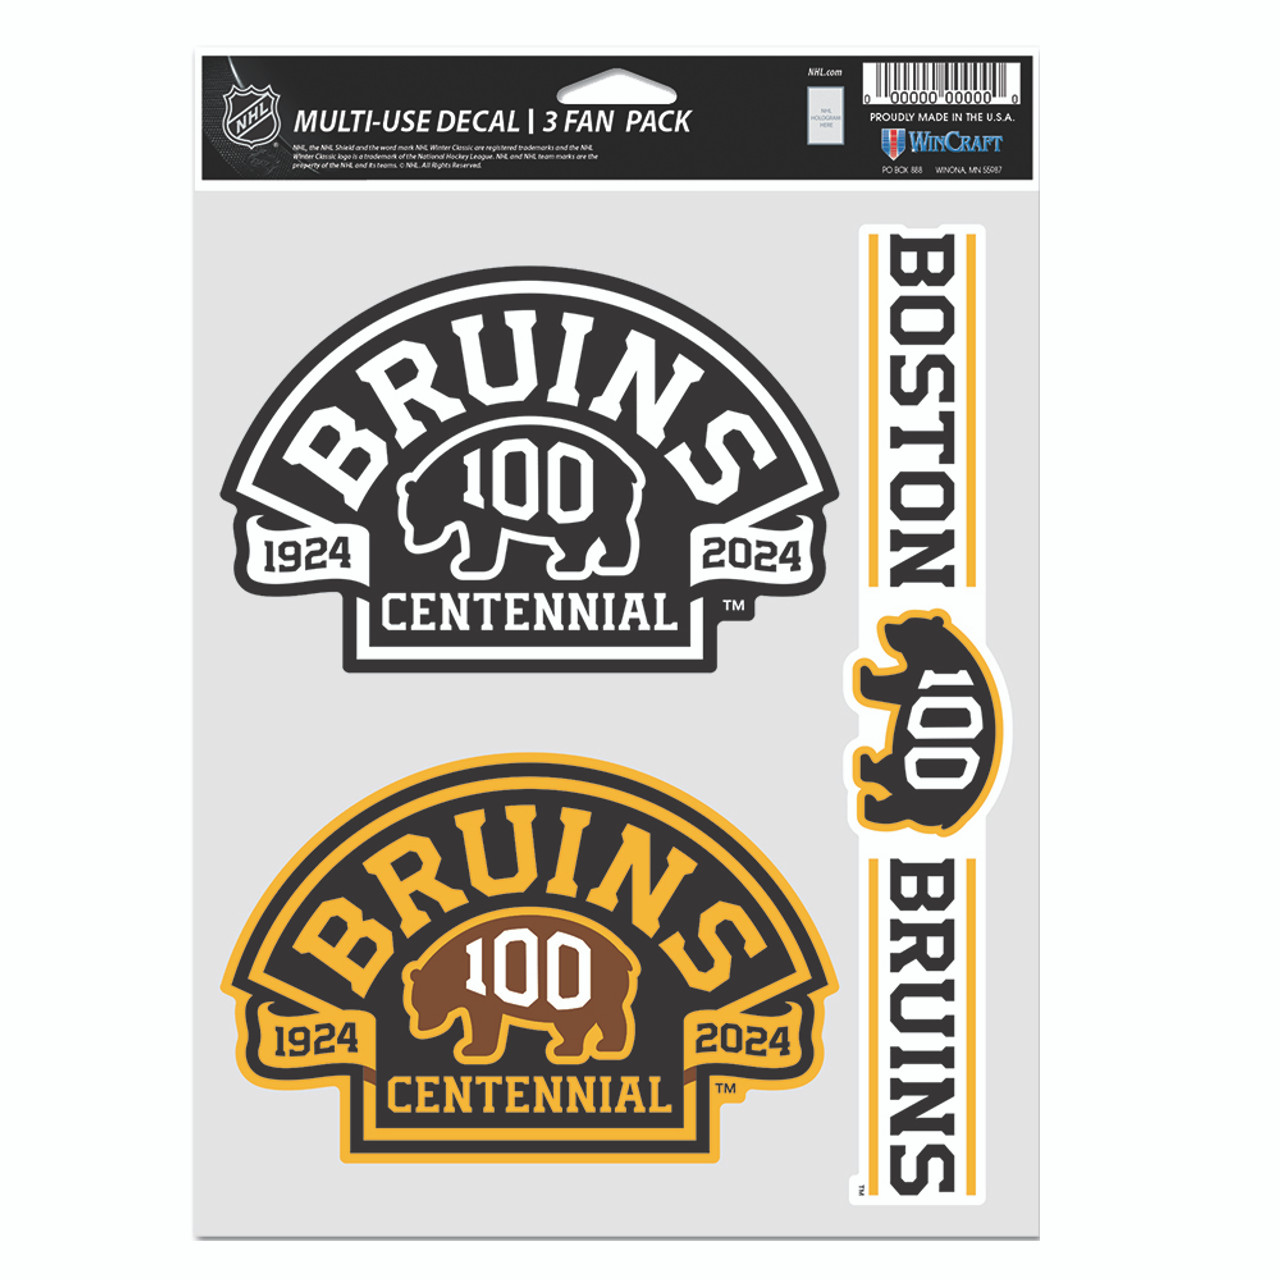 Bruins Centennial 4 x 4 Perfect Cut Decal